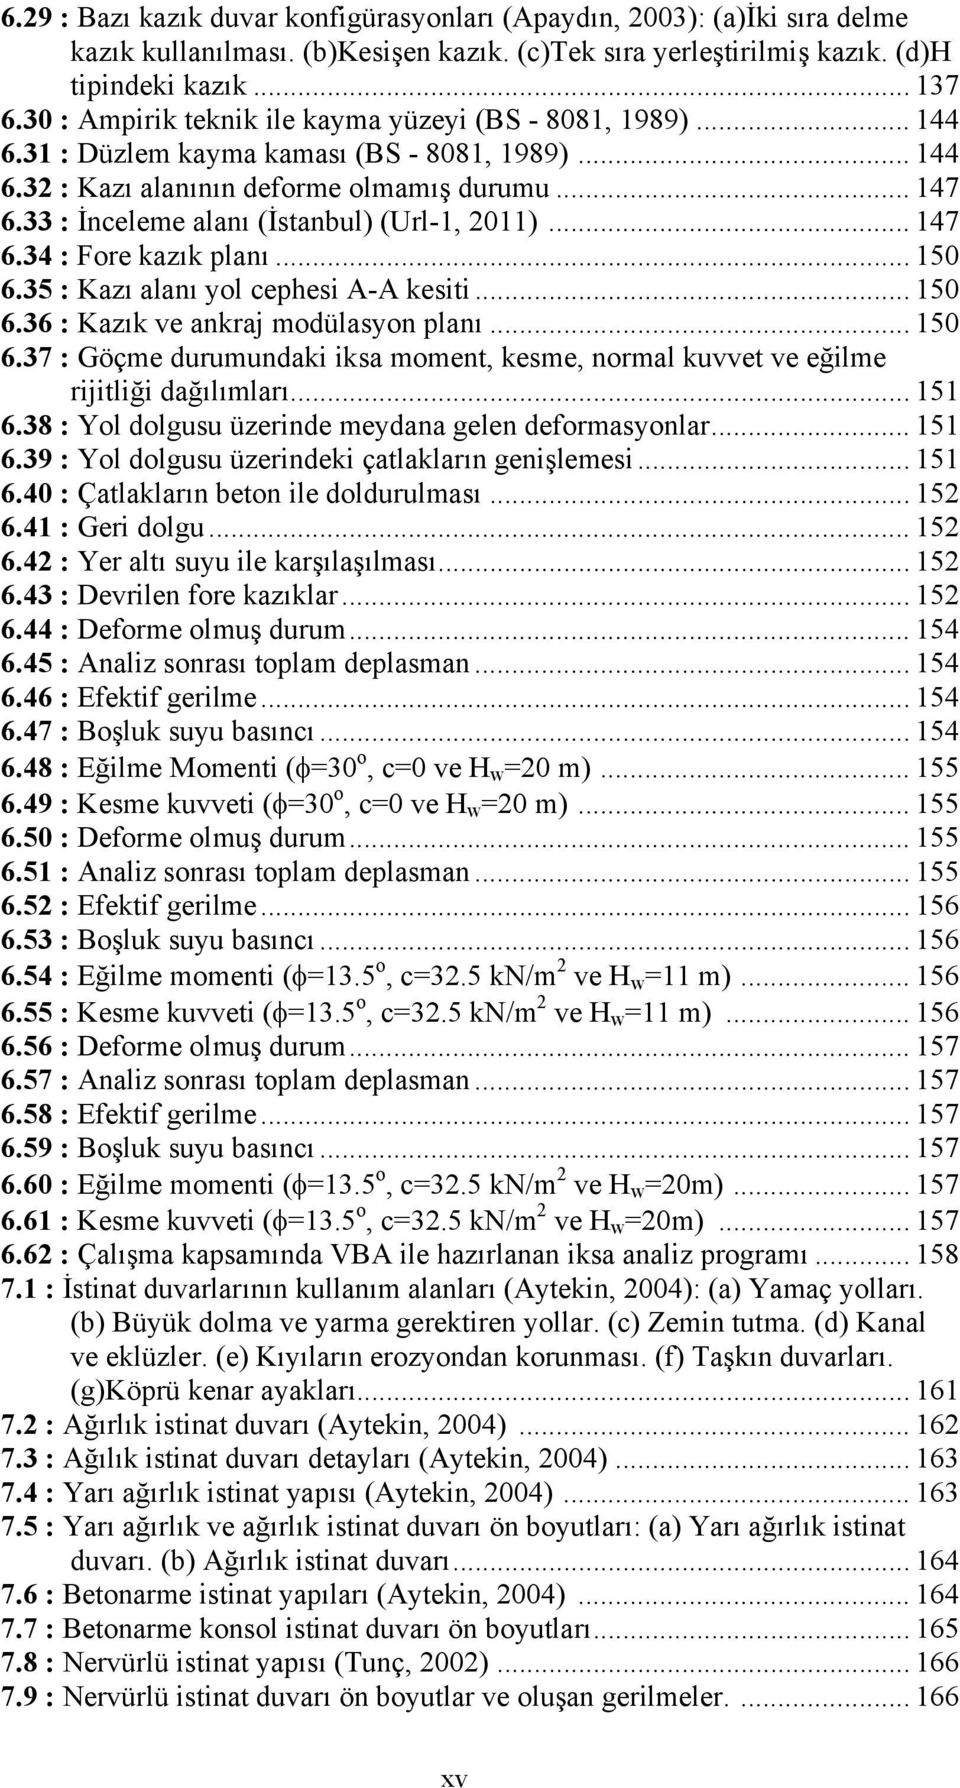 33 : İnceleme alanı (İstanbul) (Url-1, 2011)... 147 6.34 : Fore kazık planı... 150 6.35 : Kazı alanı yol cephesi A-A kesiti... 150 6.36 : Kazık ve ankraj modülasyon planı... 150 6.37 : Göçme durumundaki iksa moment, kesme, normal kuvvet ve eğilme rijitliği dağılımları.